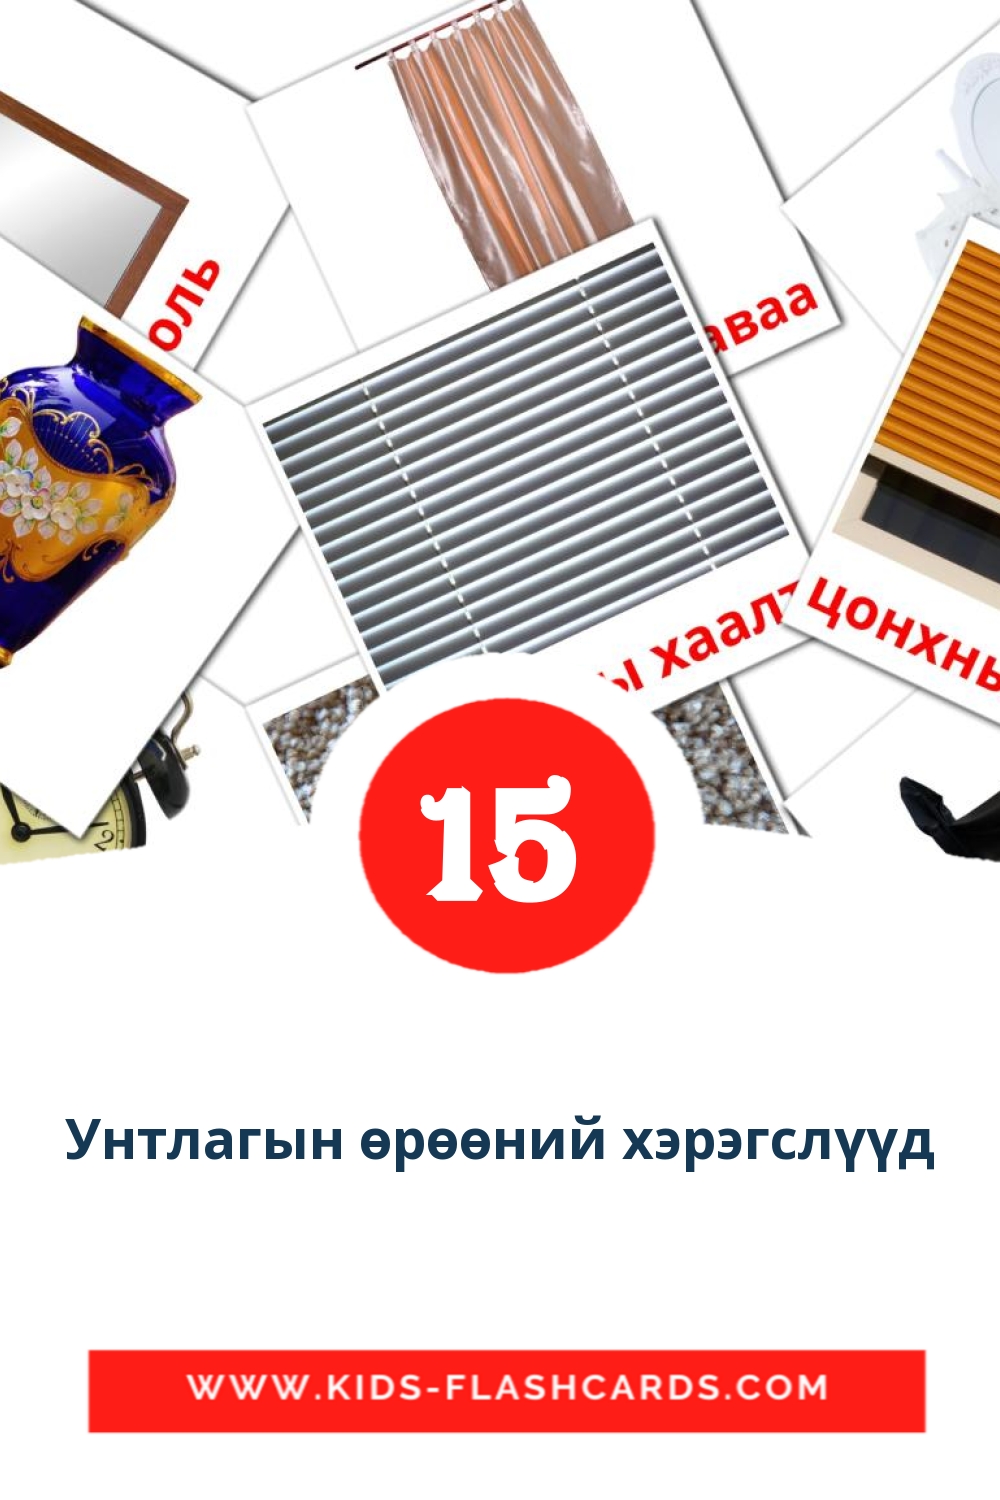 15 carte illustrate di Унтлагын өрөөний хэрэгслүүд per la scuola materna in mongolo